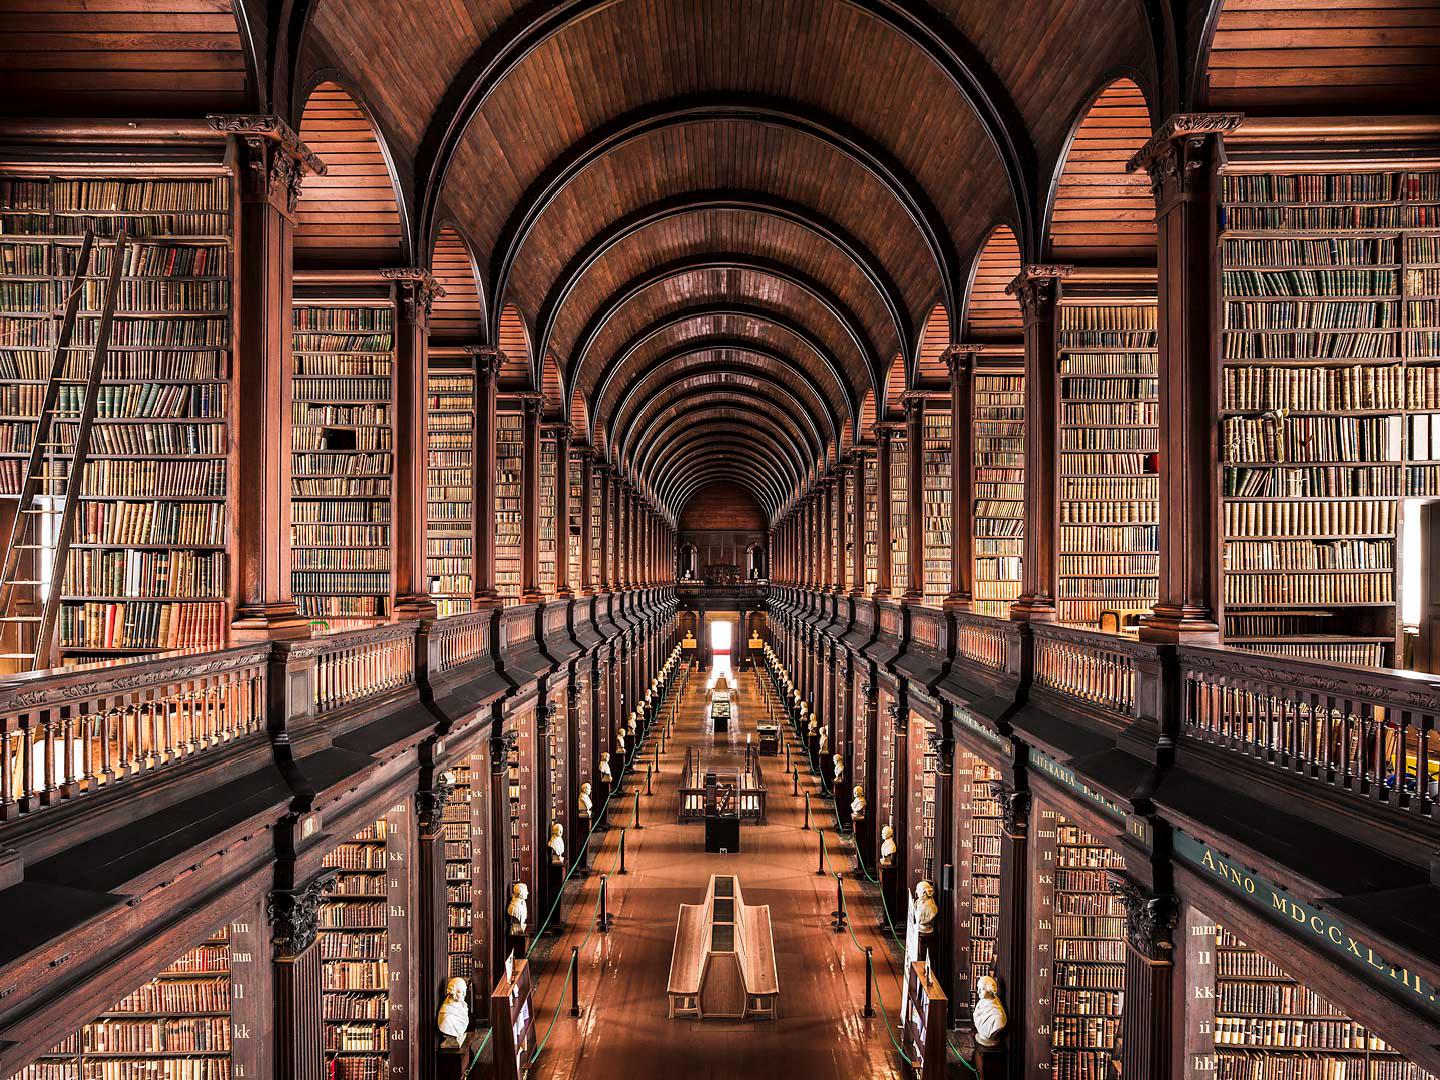 Bảo tàng văn học Dublin, noi chưa hàng nghìn đầu sách nổi tiếng trên thế giới (Ảnh: Internet).